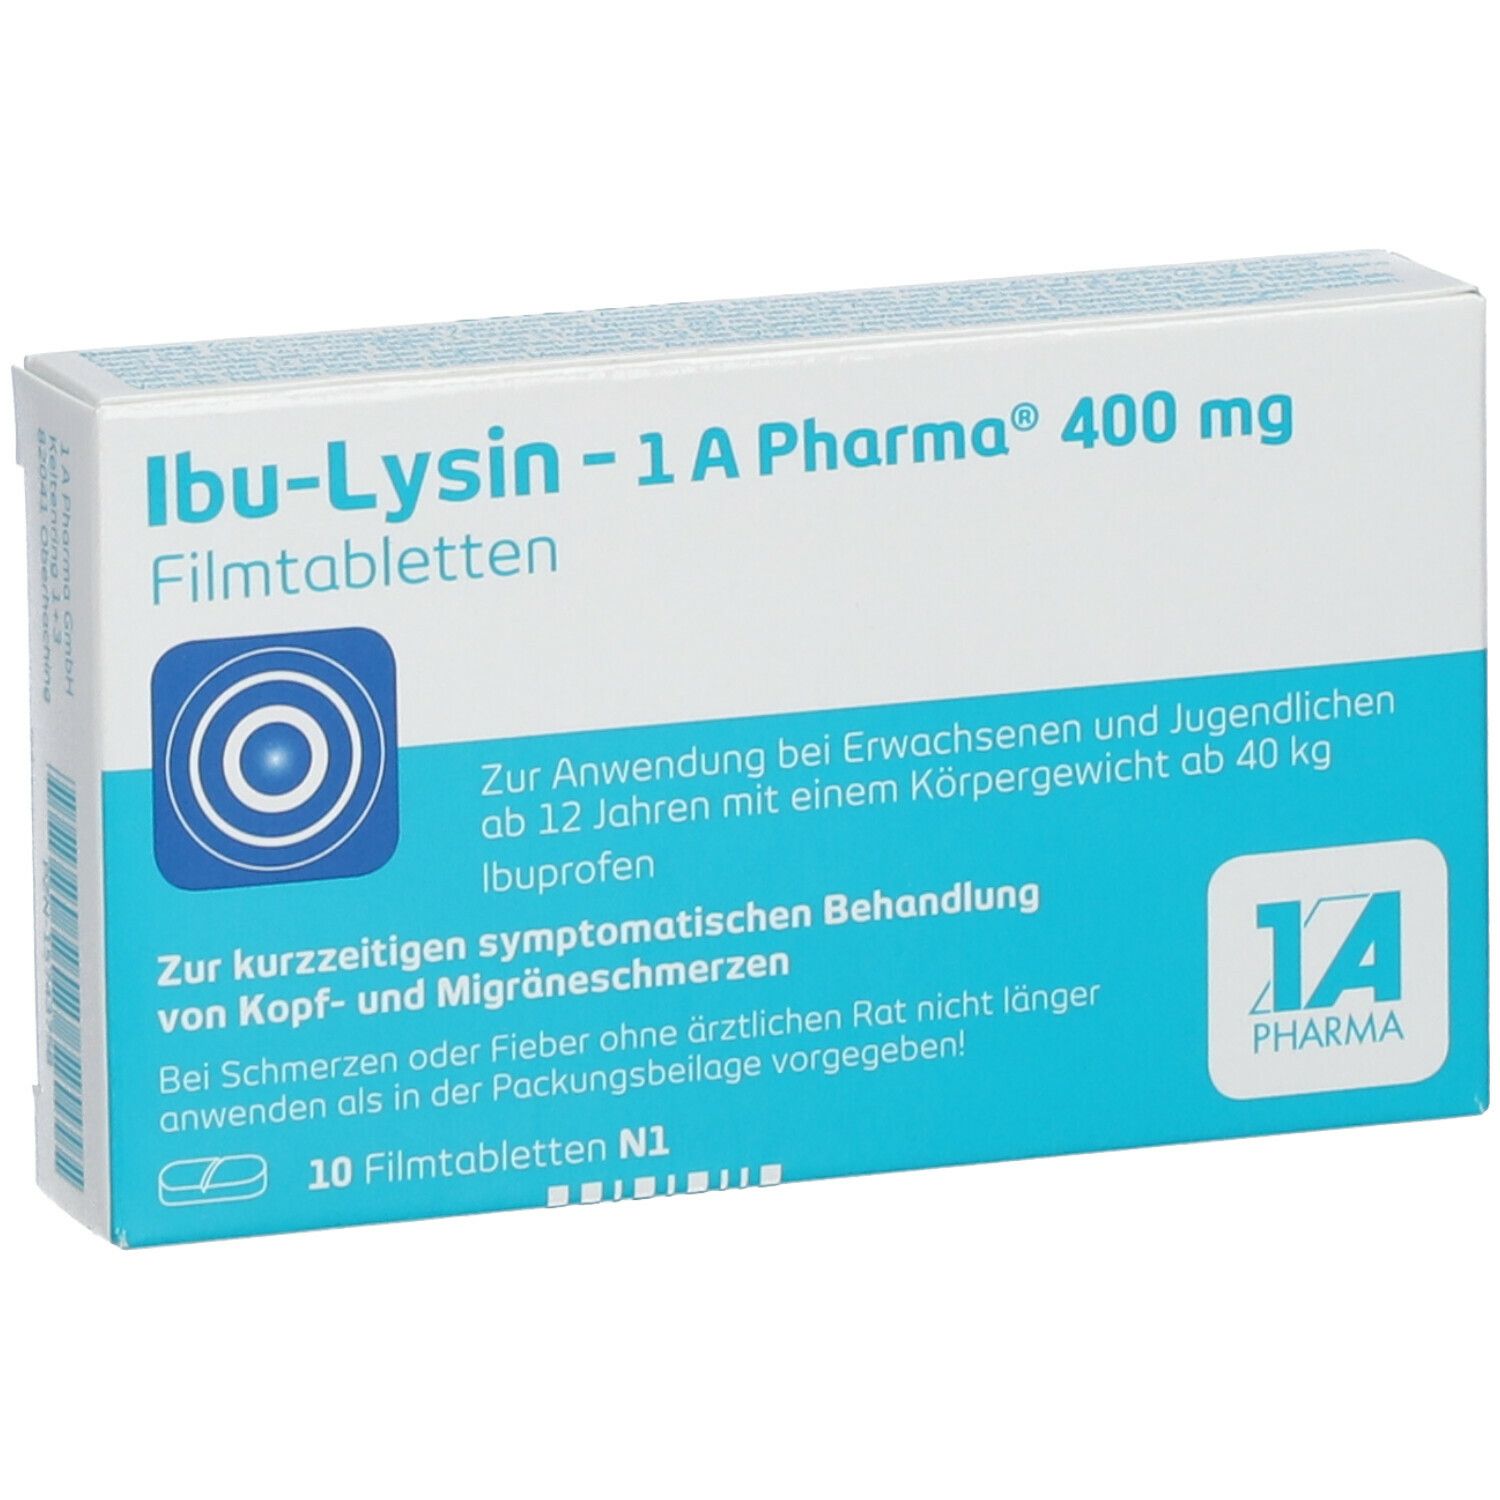 Ibu-Lysin - 1A Pharma® 400 mg